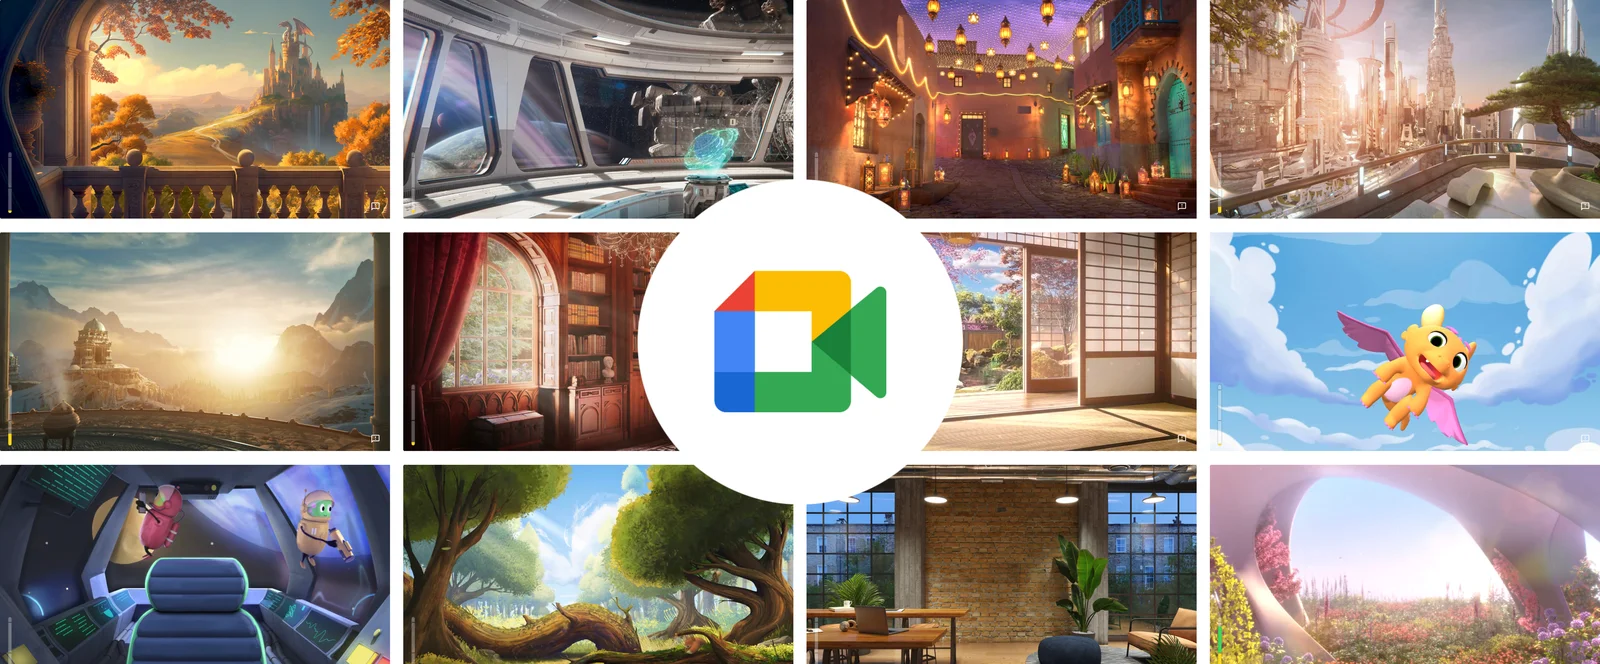 20 tiện ích hay dành cho Google Meet trên Chrome - Hội đồng bộ môn Tin học  - tỉnh An Giang